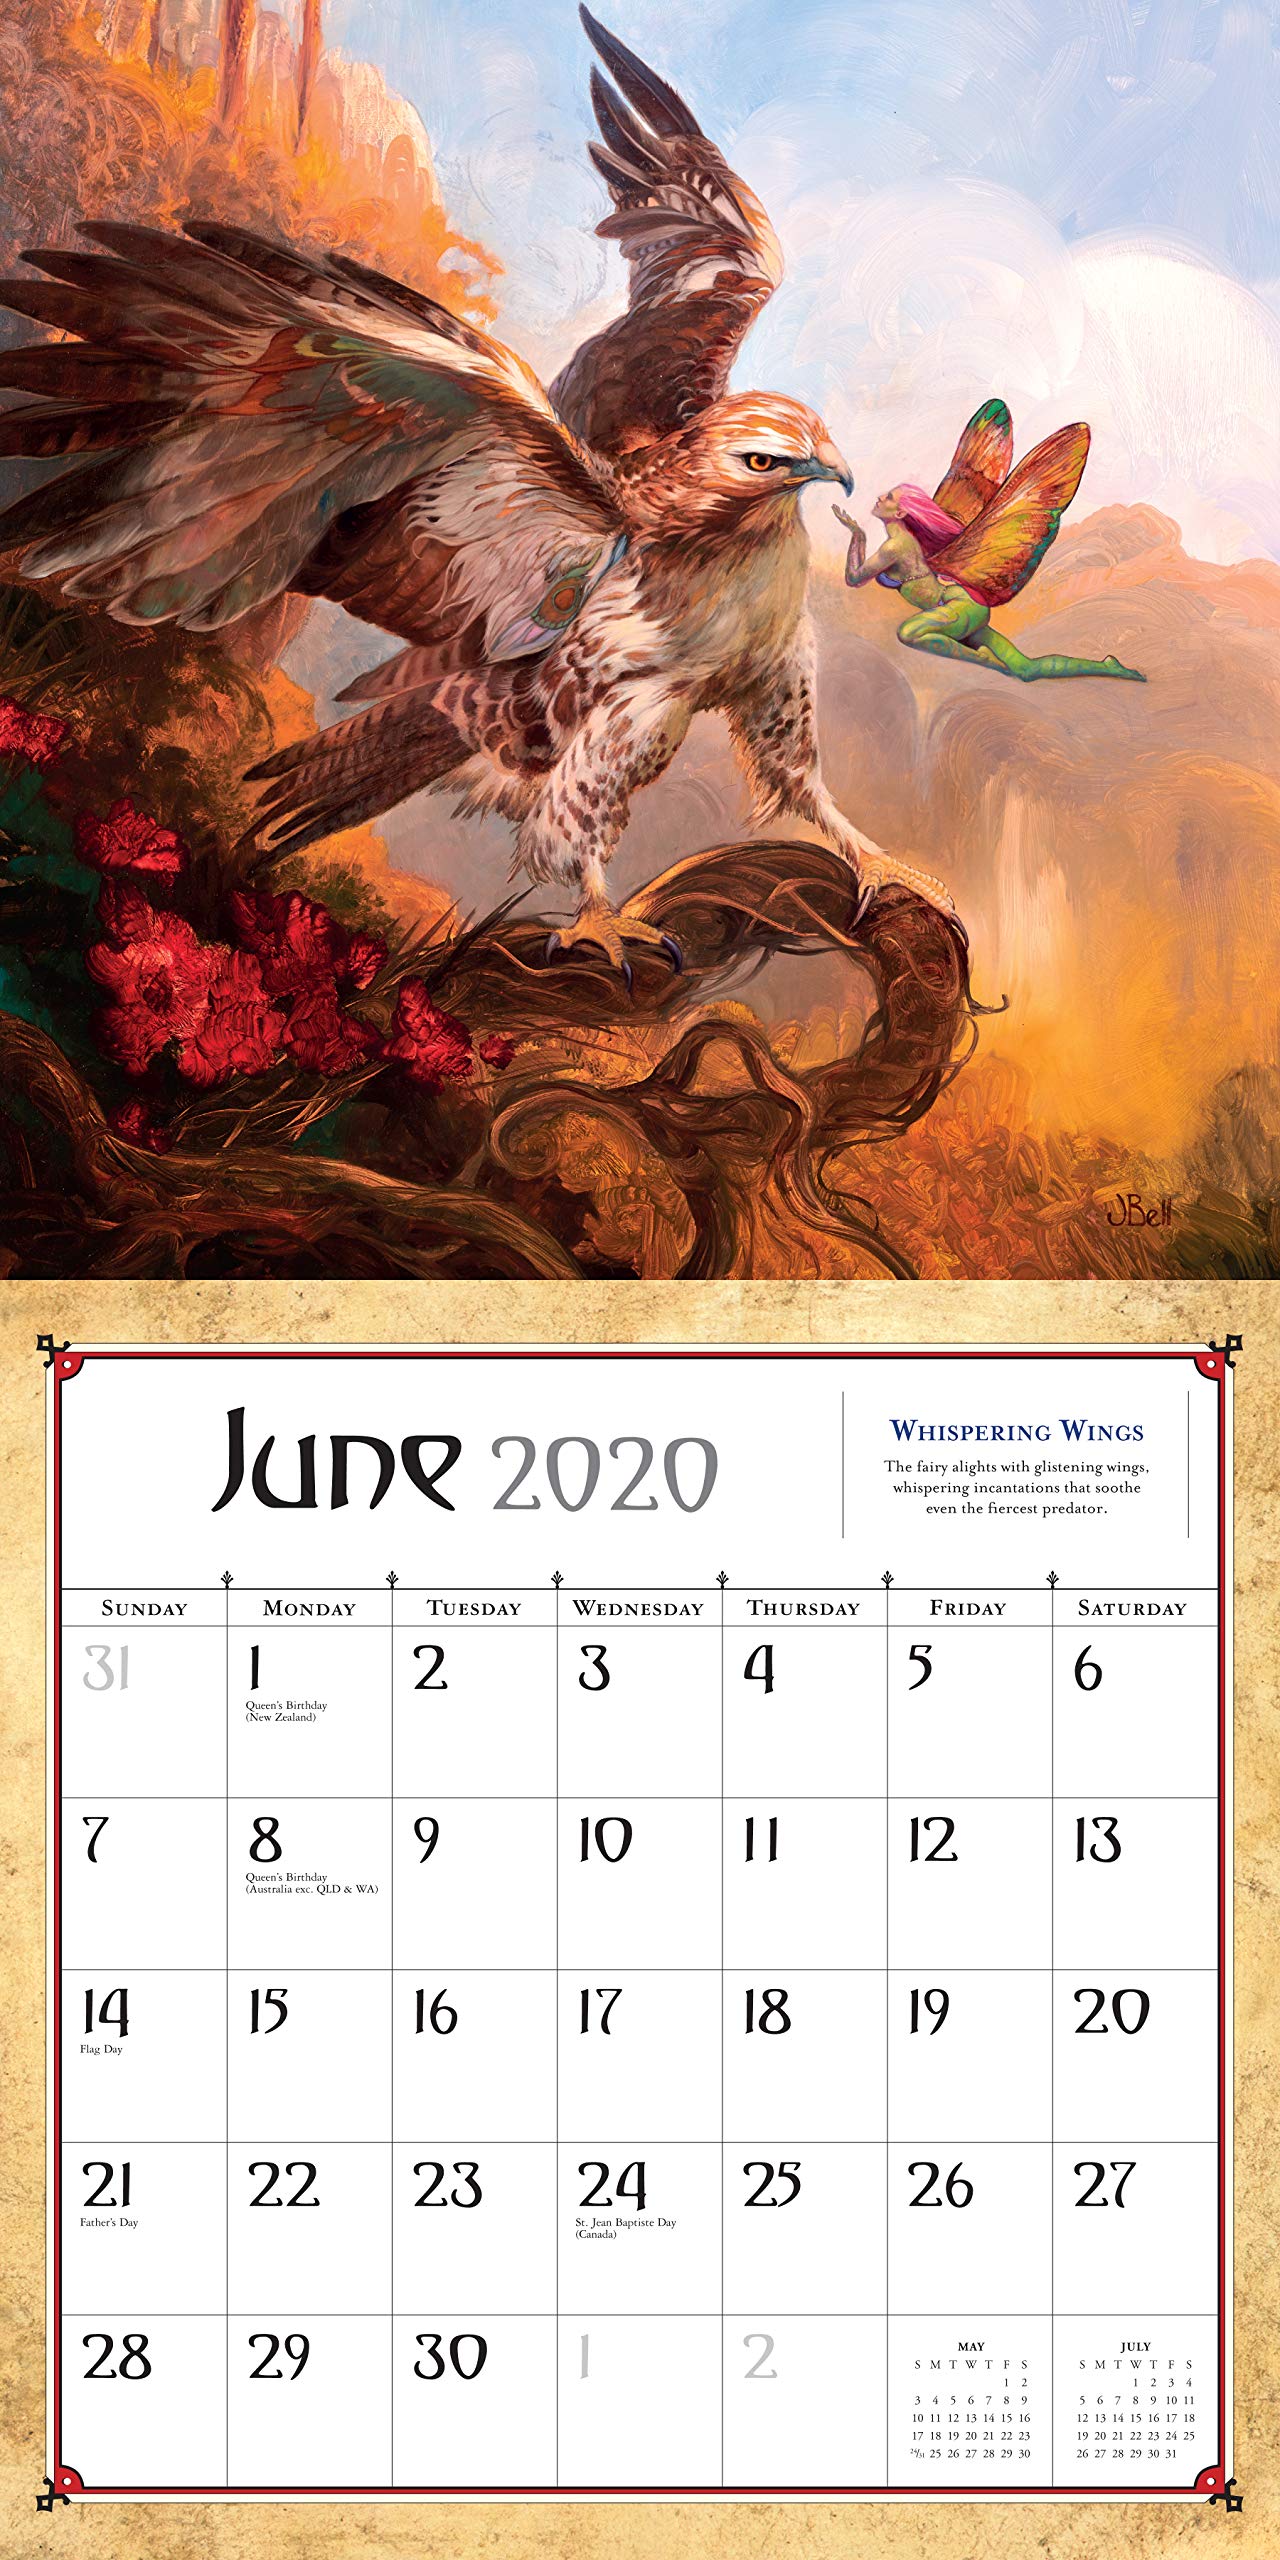 Boris Vallejo & Julie Bell's Fantasy Wall Calendar 2020